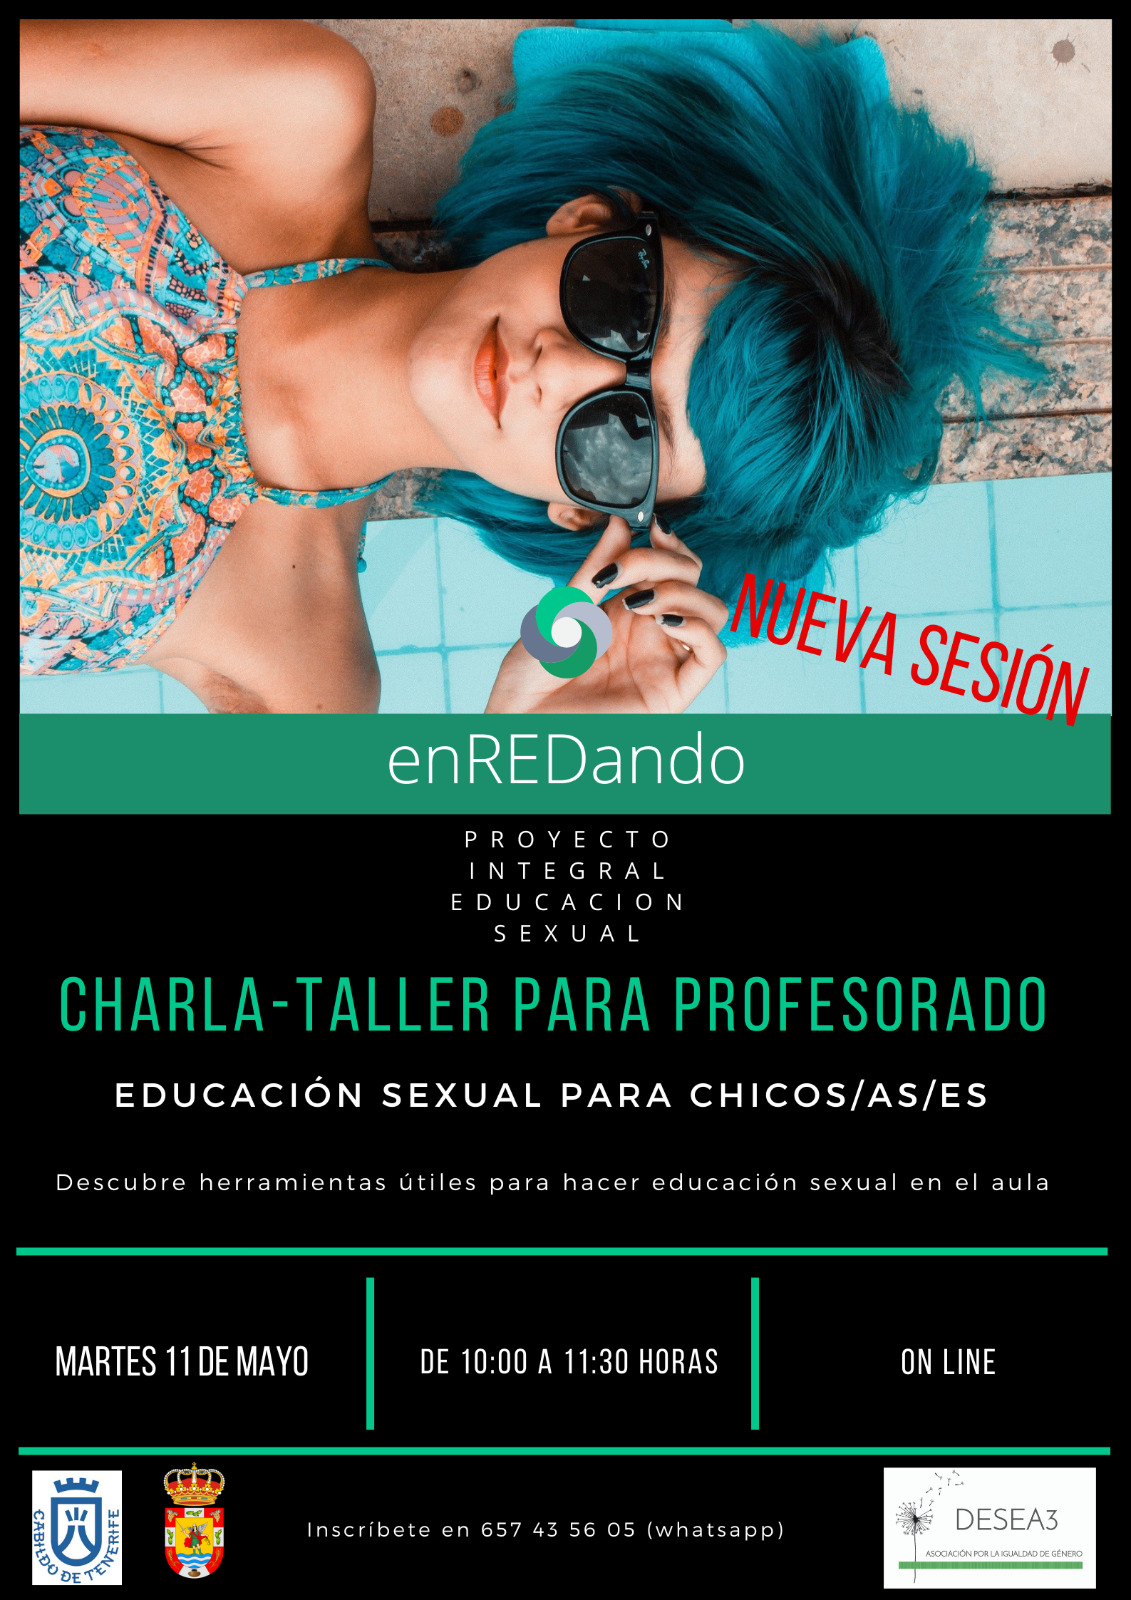 Educación sexual para jóvenes, nueva charla – taller del proyecto EnREDando que estará enfocada al profesorado